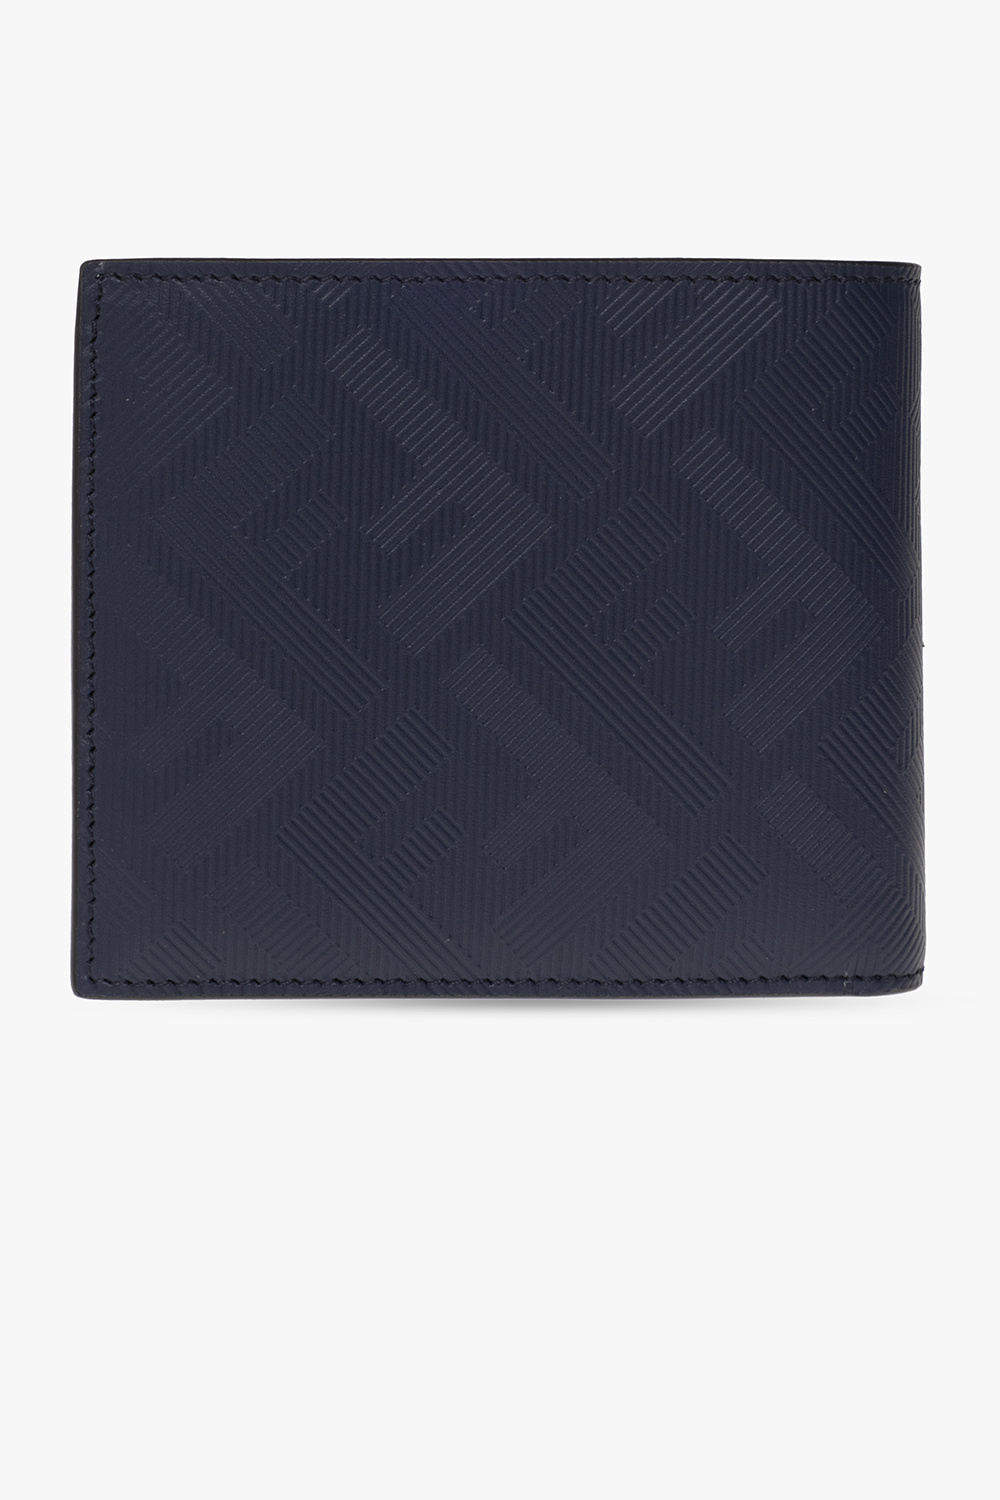 Fendi Wallet - Fendi Bi-Fold Leather Wallet Blue For Women